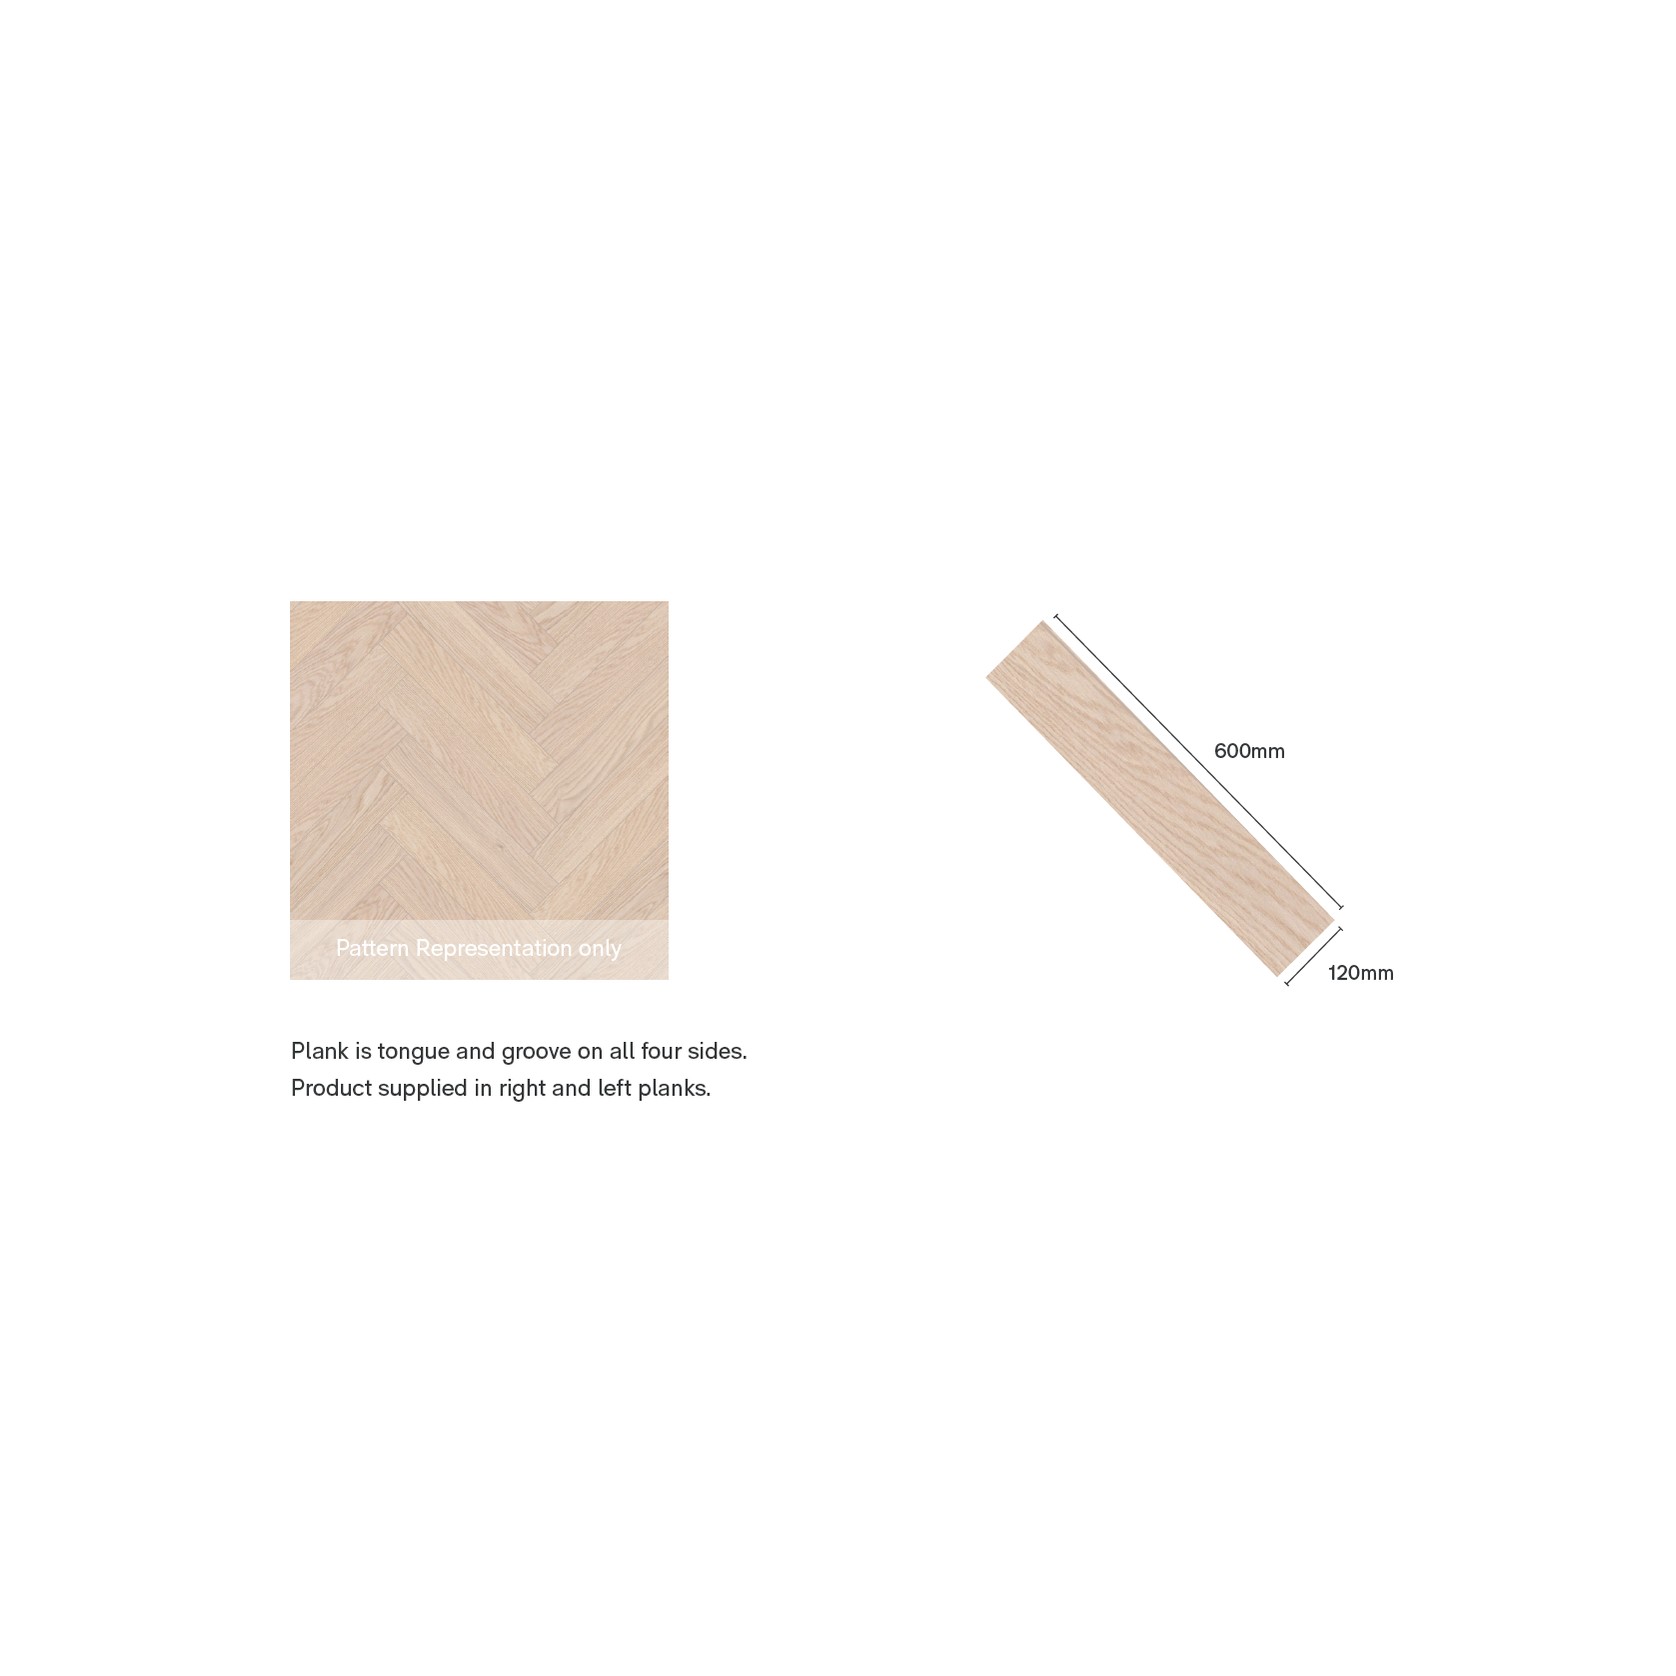 Smartfloor Tawny Oak Herringbone Timber Flooring gallery detail image